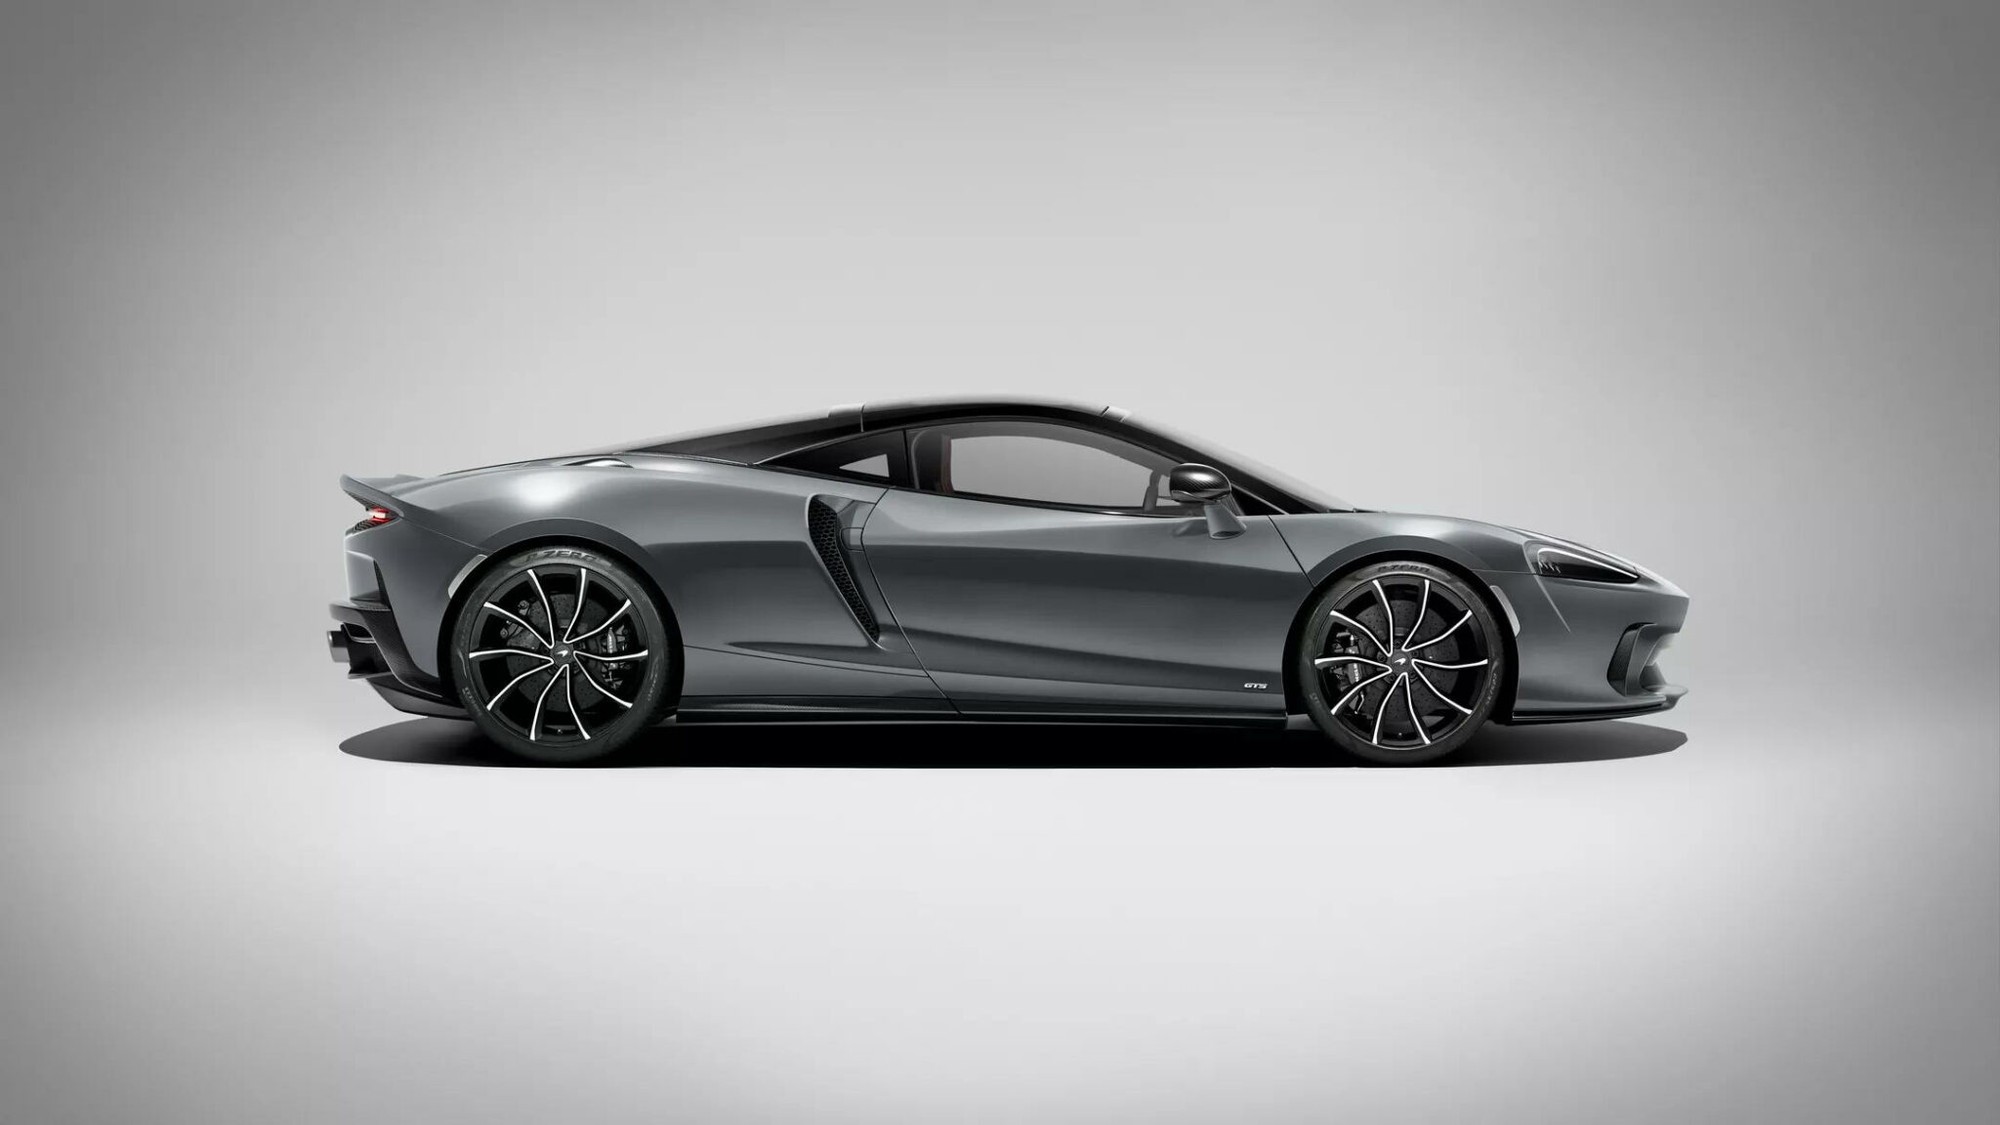 Siêu xe McLaren GTS thế hệ mới có thể đạt tốc độ 327km/h